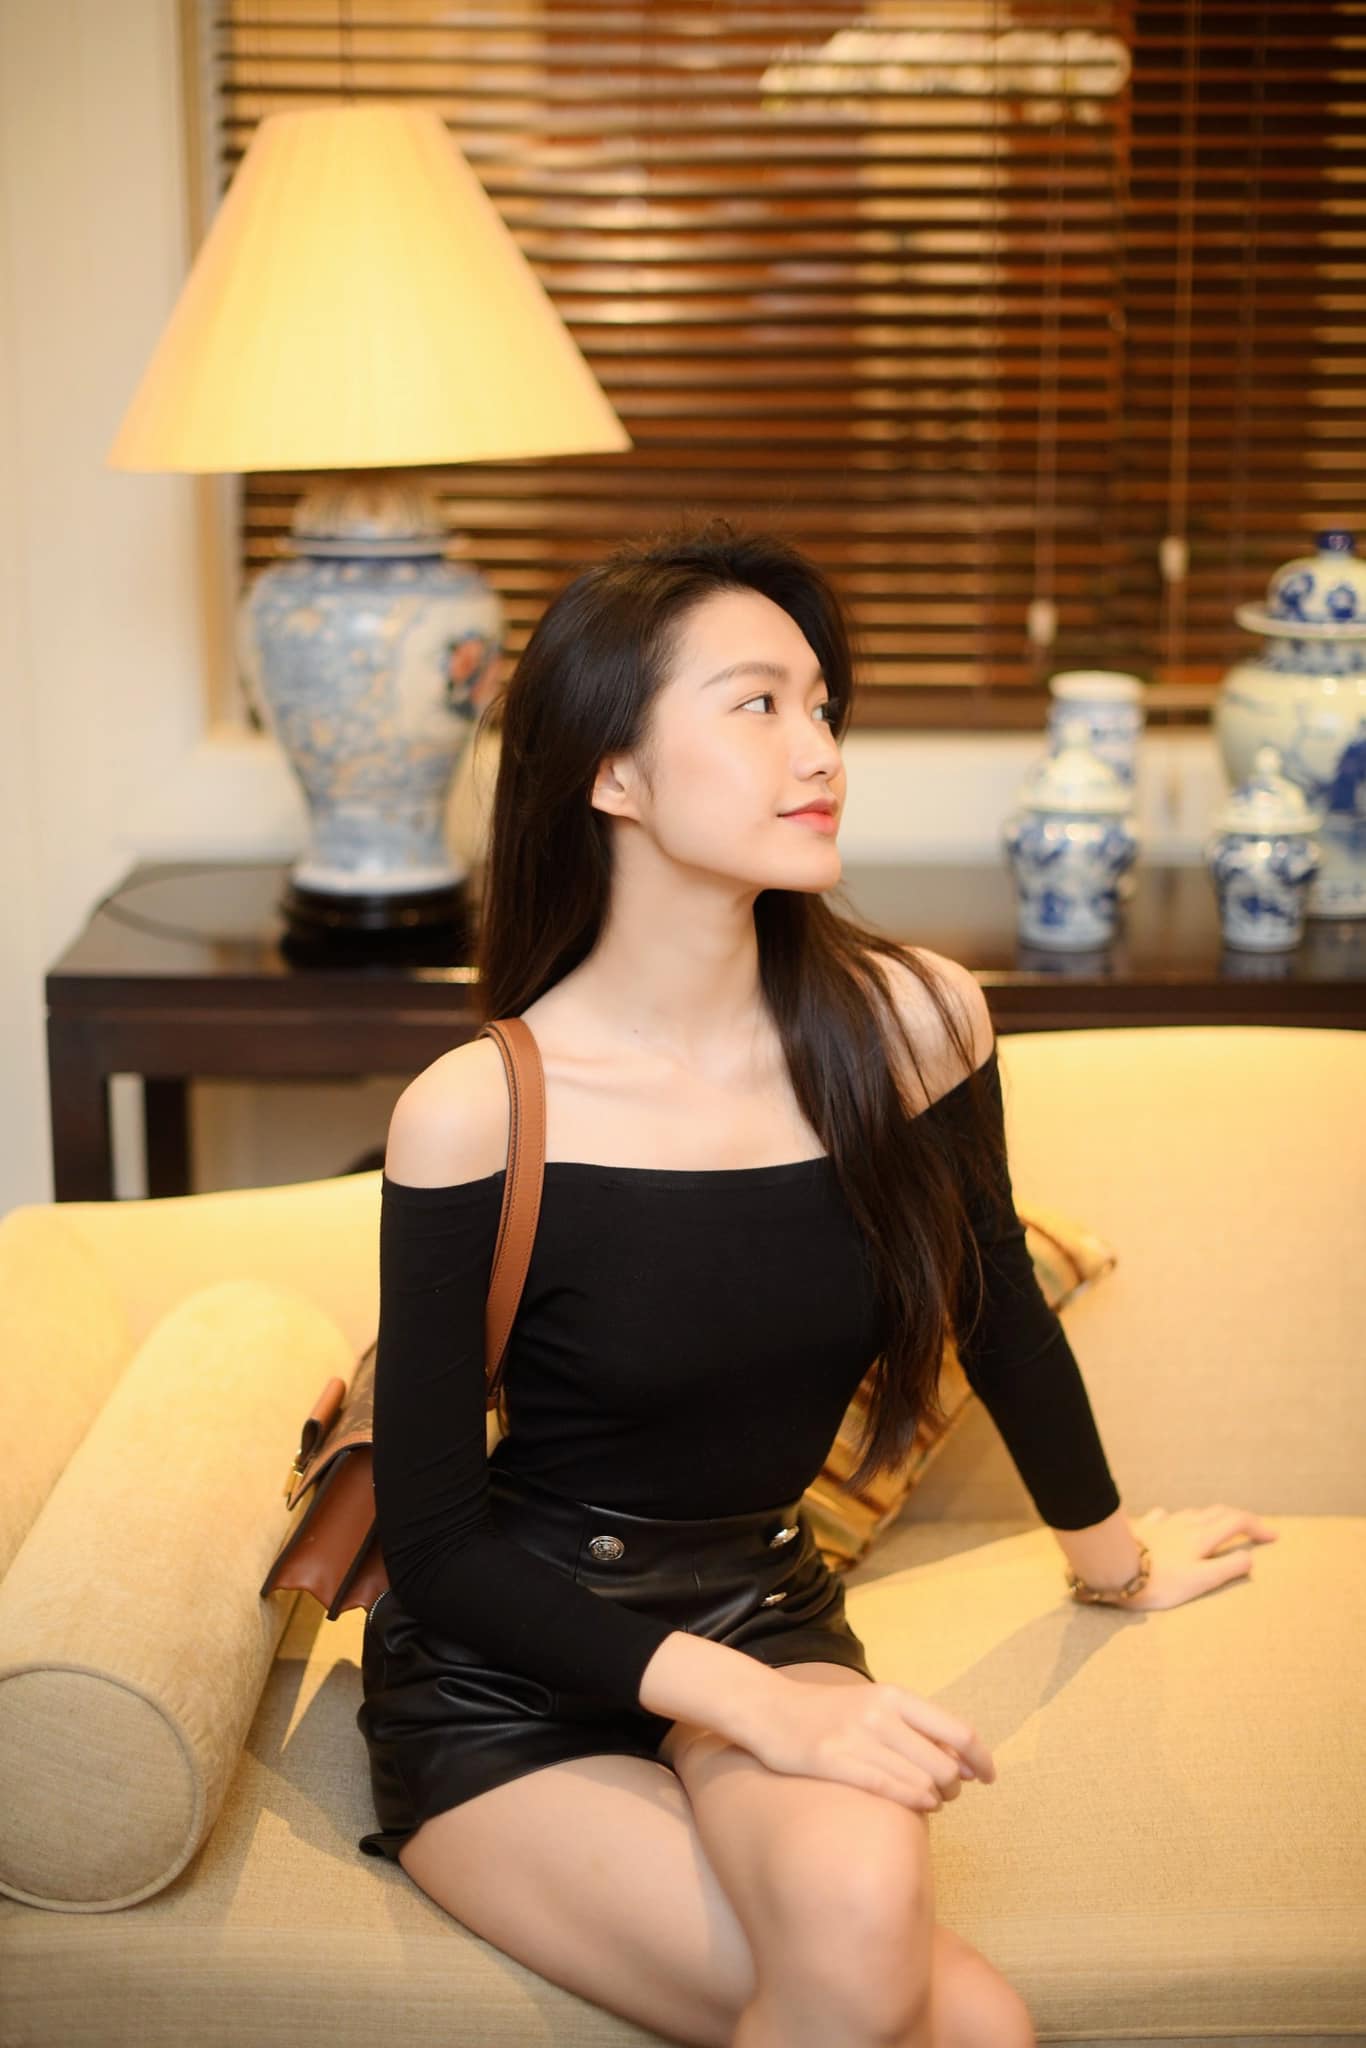 Dù chuyển hướng gu ăn vận sexy, táo bạo, song bạn gái Đoàn Văn Hậu vẫn trung thành với mái tóc đen tuyền mềm mại, kiểu make-up nhẹ nhàng, thanh tú.